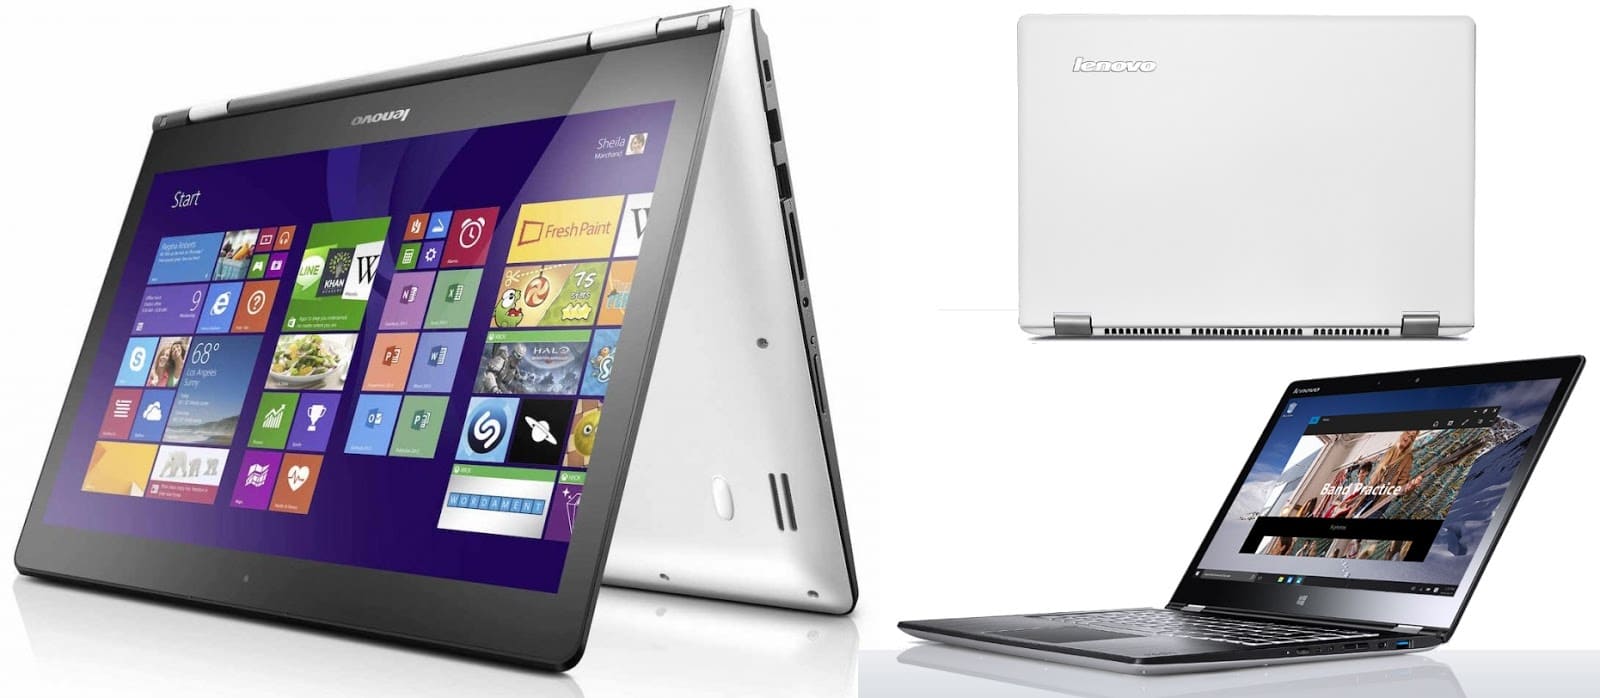 Đánh giá Lenovo Yoga 700 – Laptop 2 trong 1 làm việc, giải trí hoàn hảo